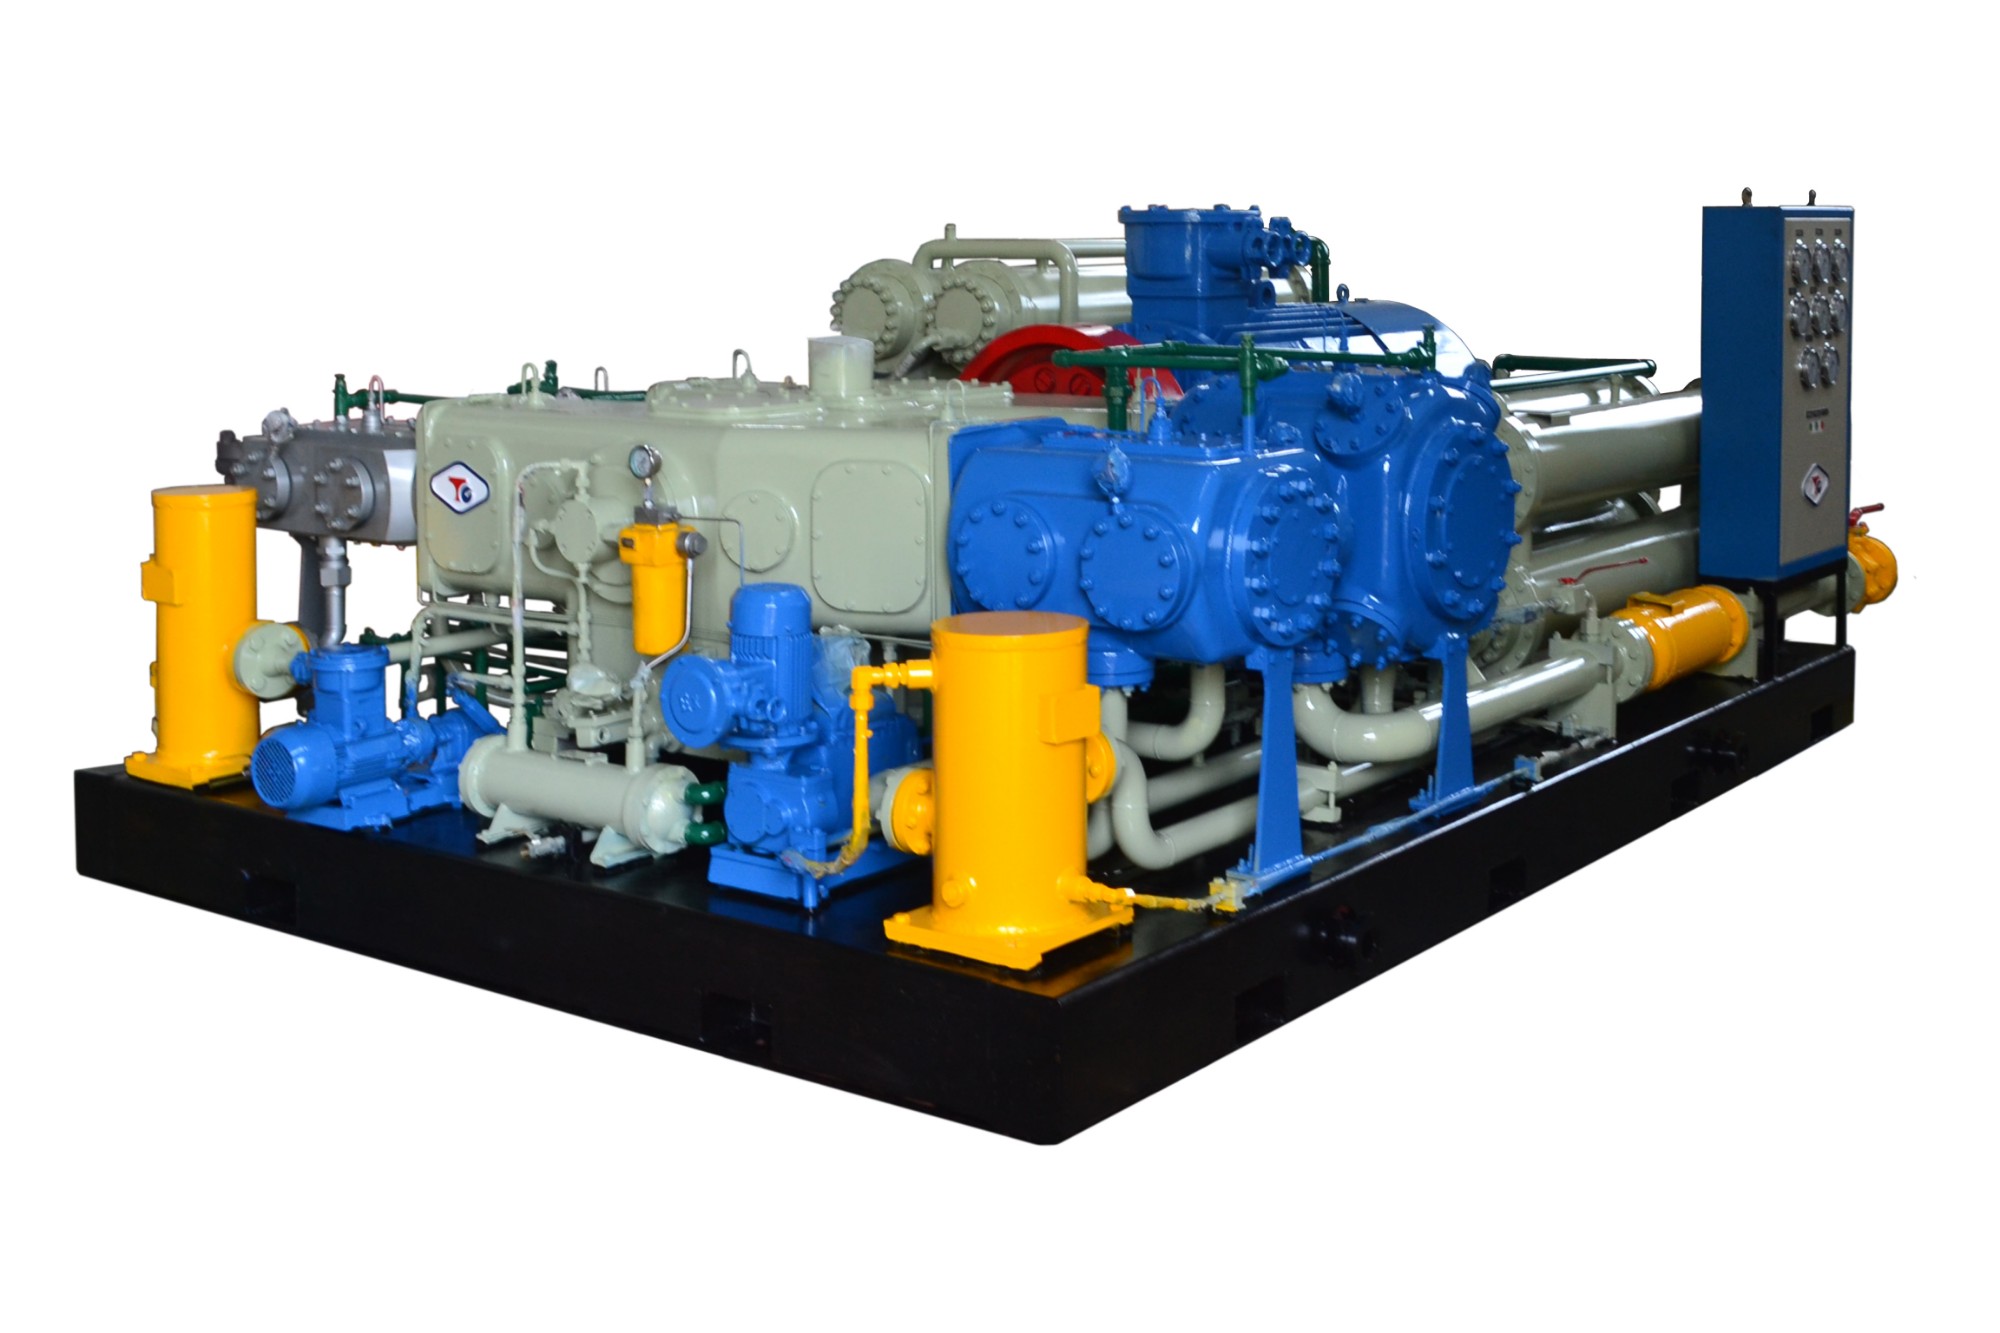 600-14700NM3/H Gas Compressor Manufacturers, 600-14700NM3/H Gas Compressor Factory, Supply 600-14700NM3/H Gas Compressor